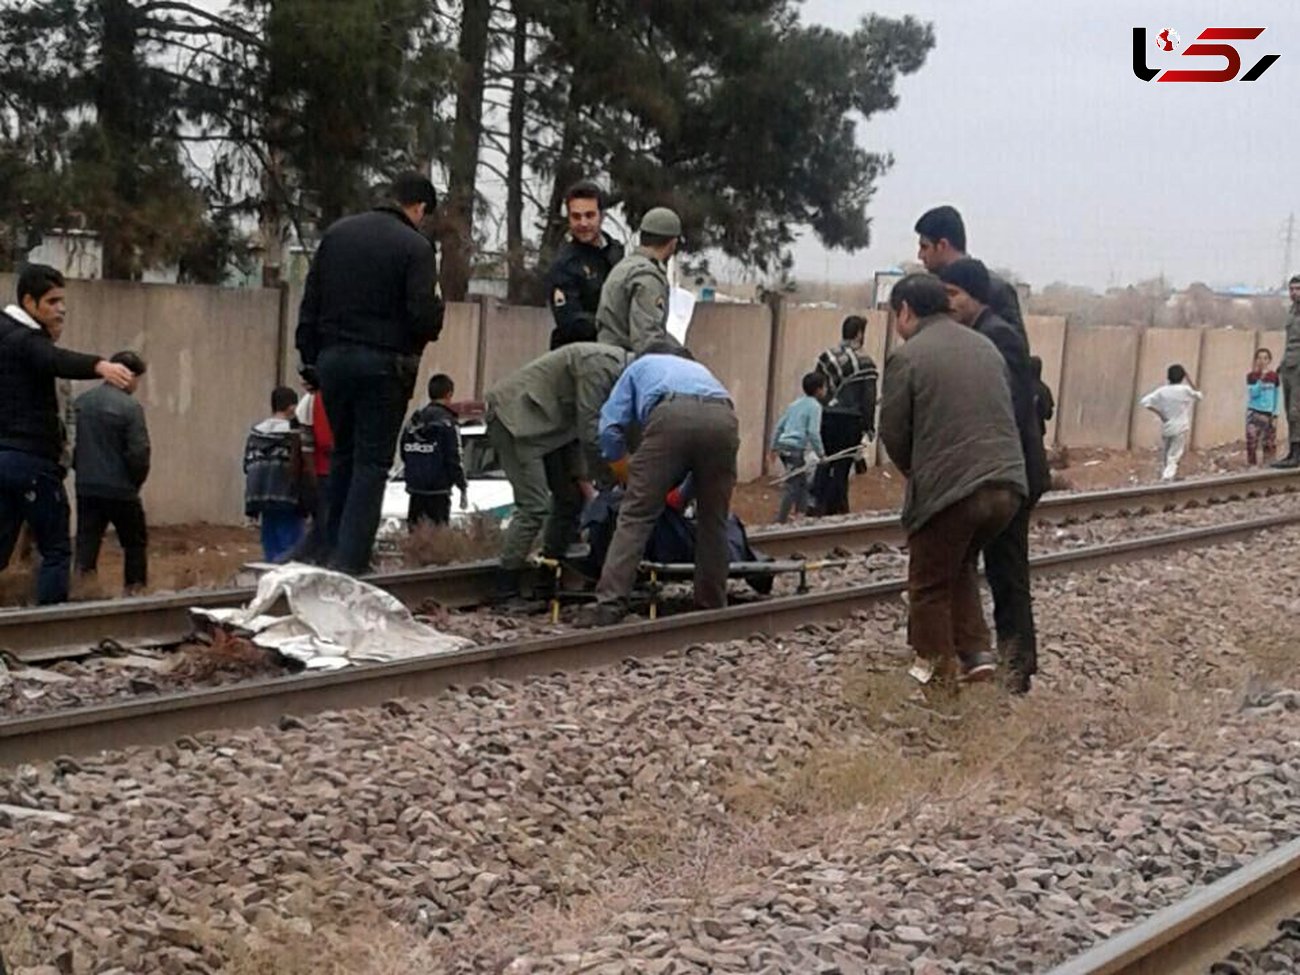 قطار دختر نوجوان تهرانی را له کرد / ساعتی پیش رخ داد + عکس